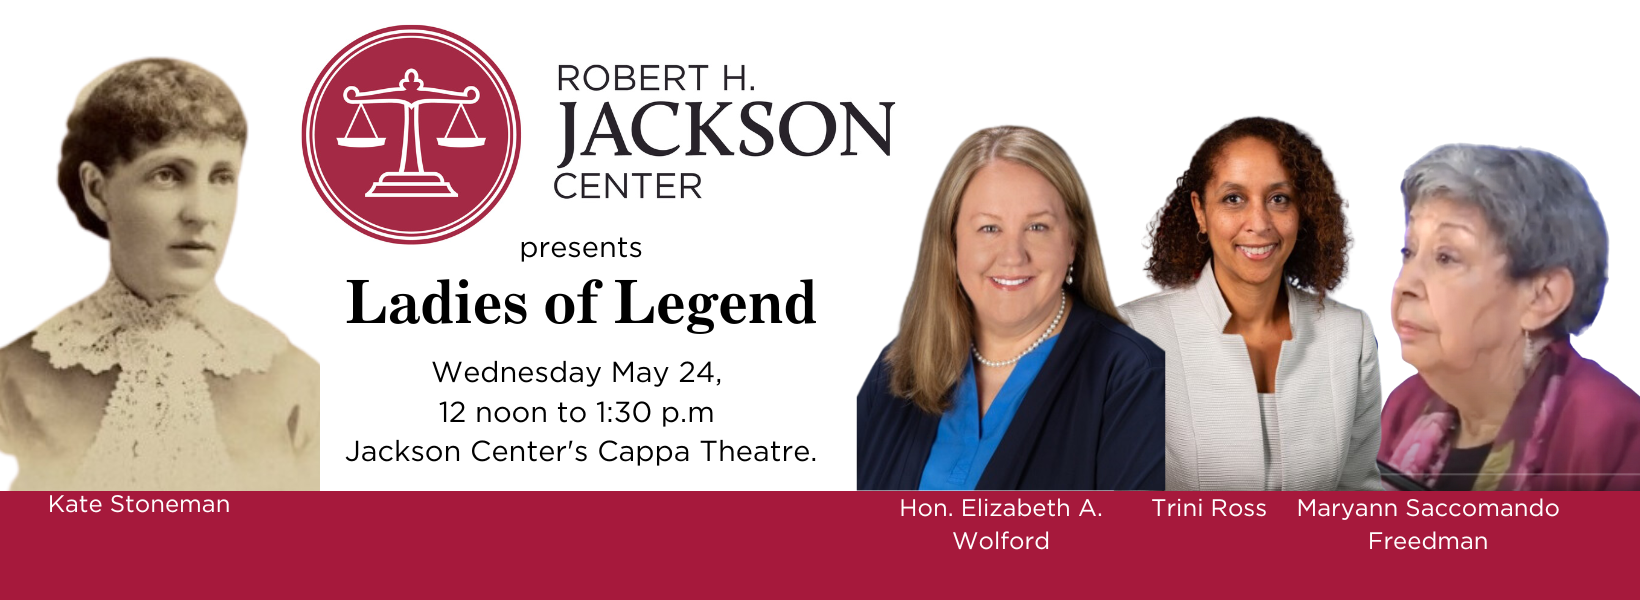 Events - Robert H Jackson Center